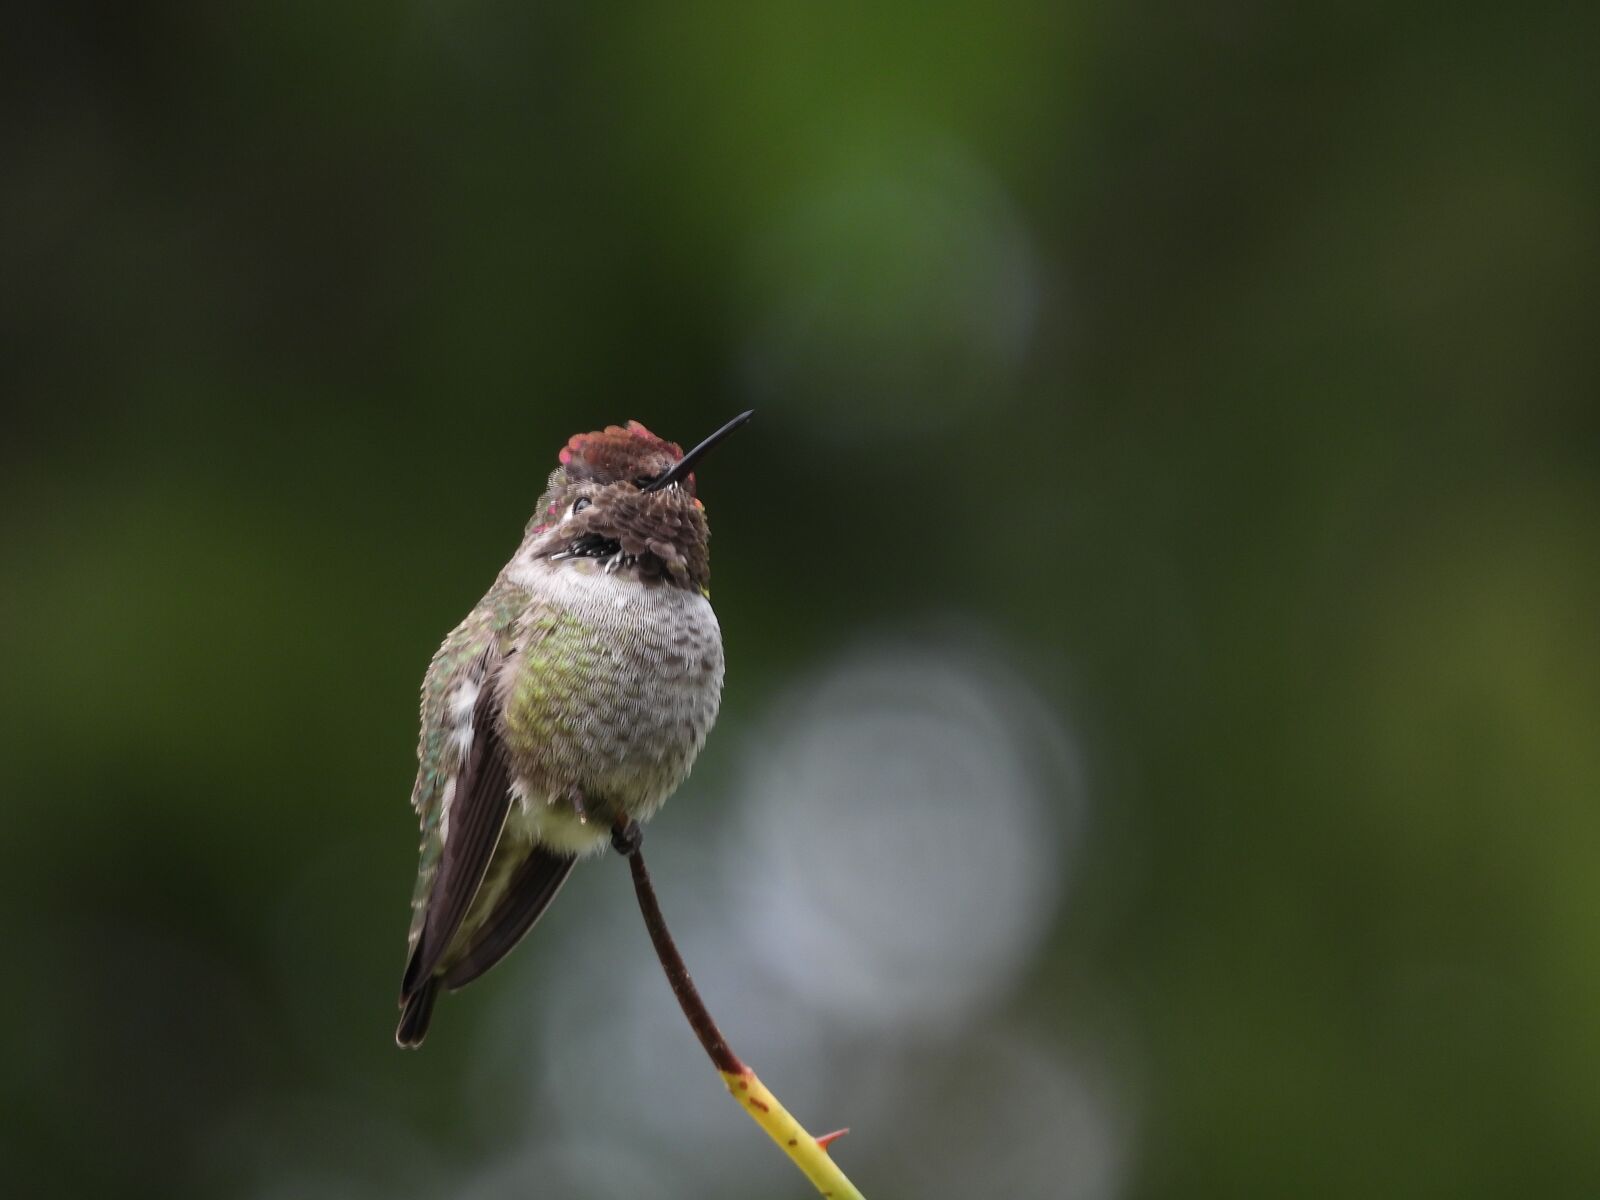 Nikon Coolpix P1000 sample photo. Anna, hummingbird, nature photography